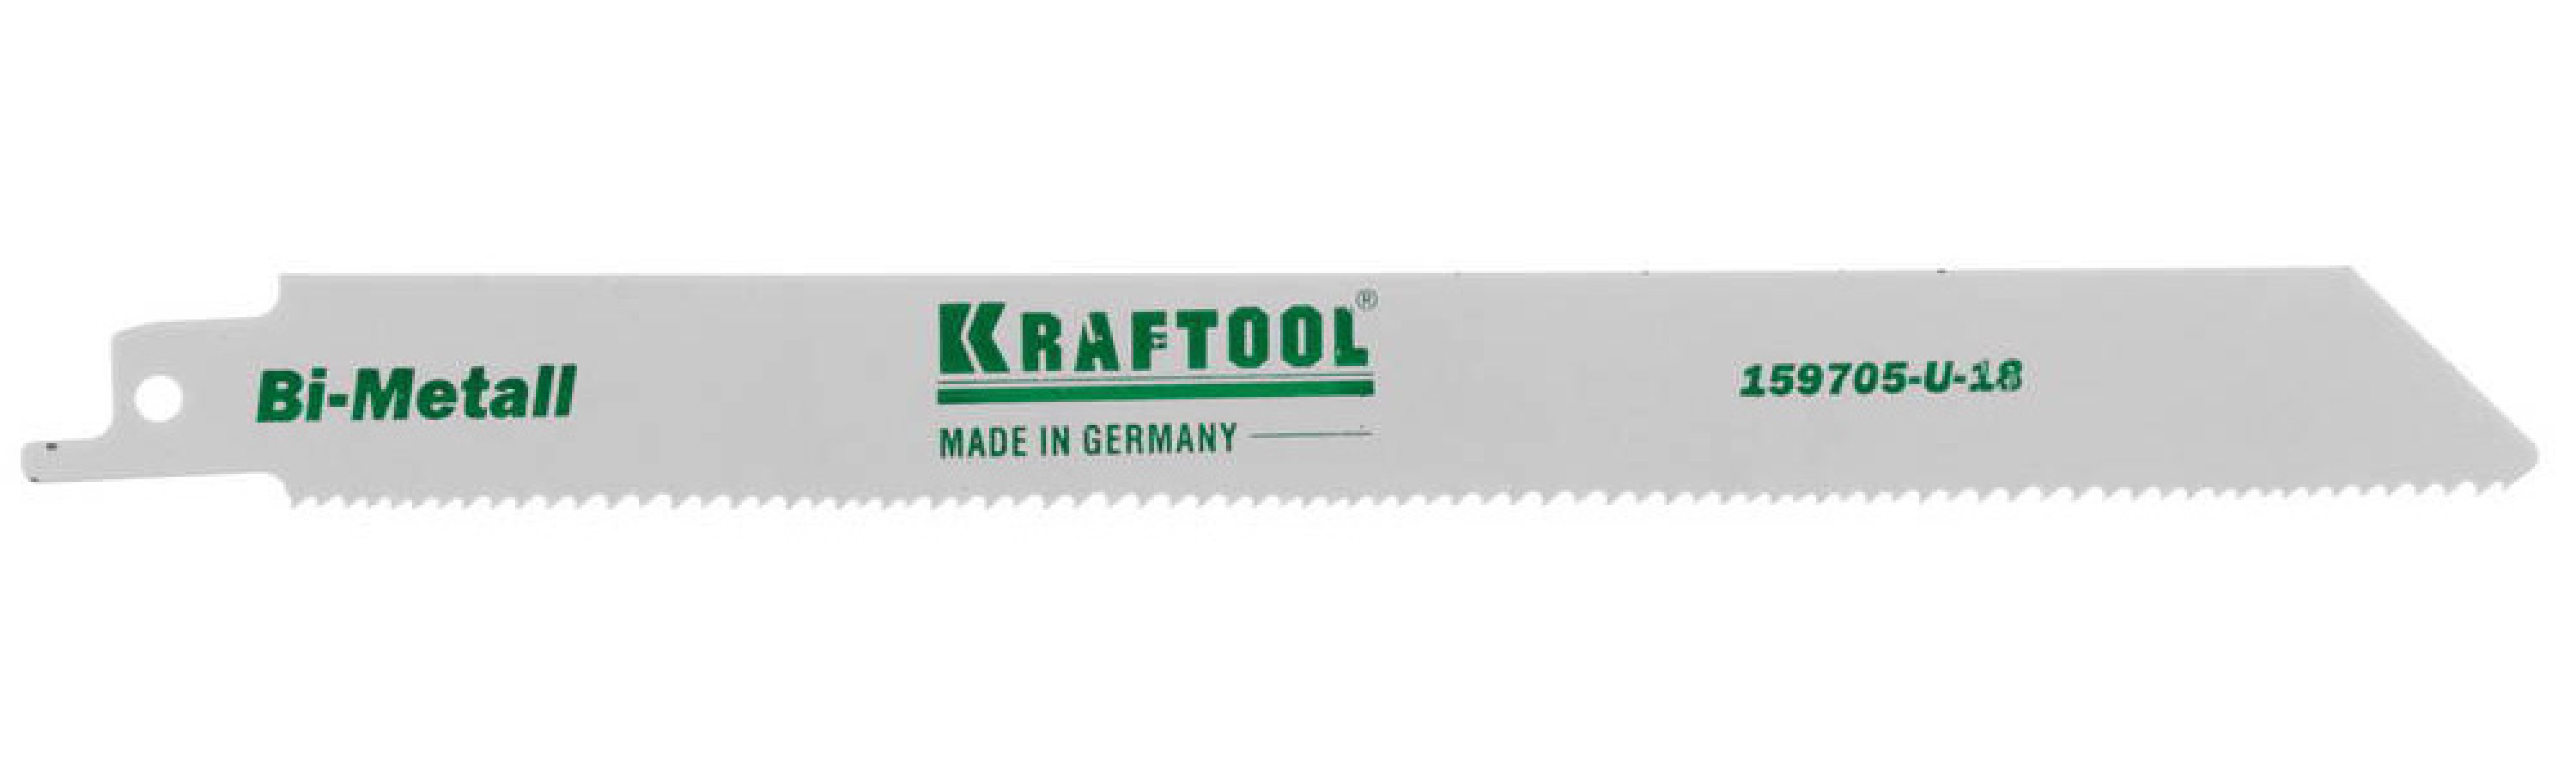 KRAFTOOL     Bi-Met,  1.8-2.5 , 180 ,    (159705-U-18)